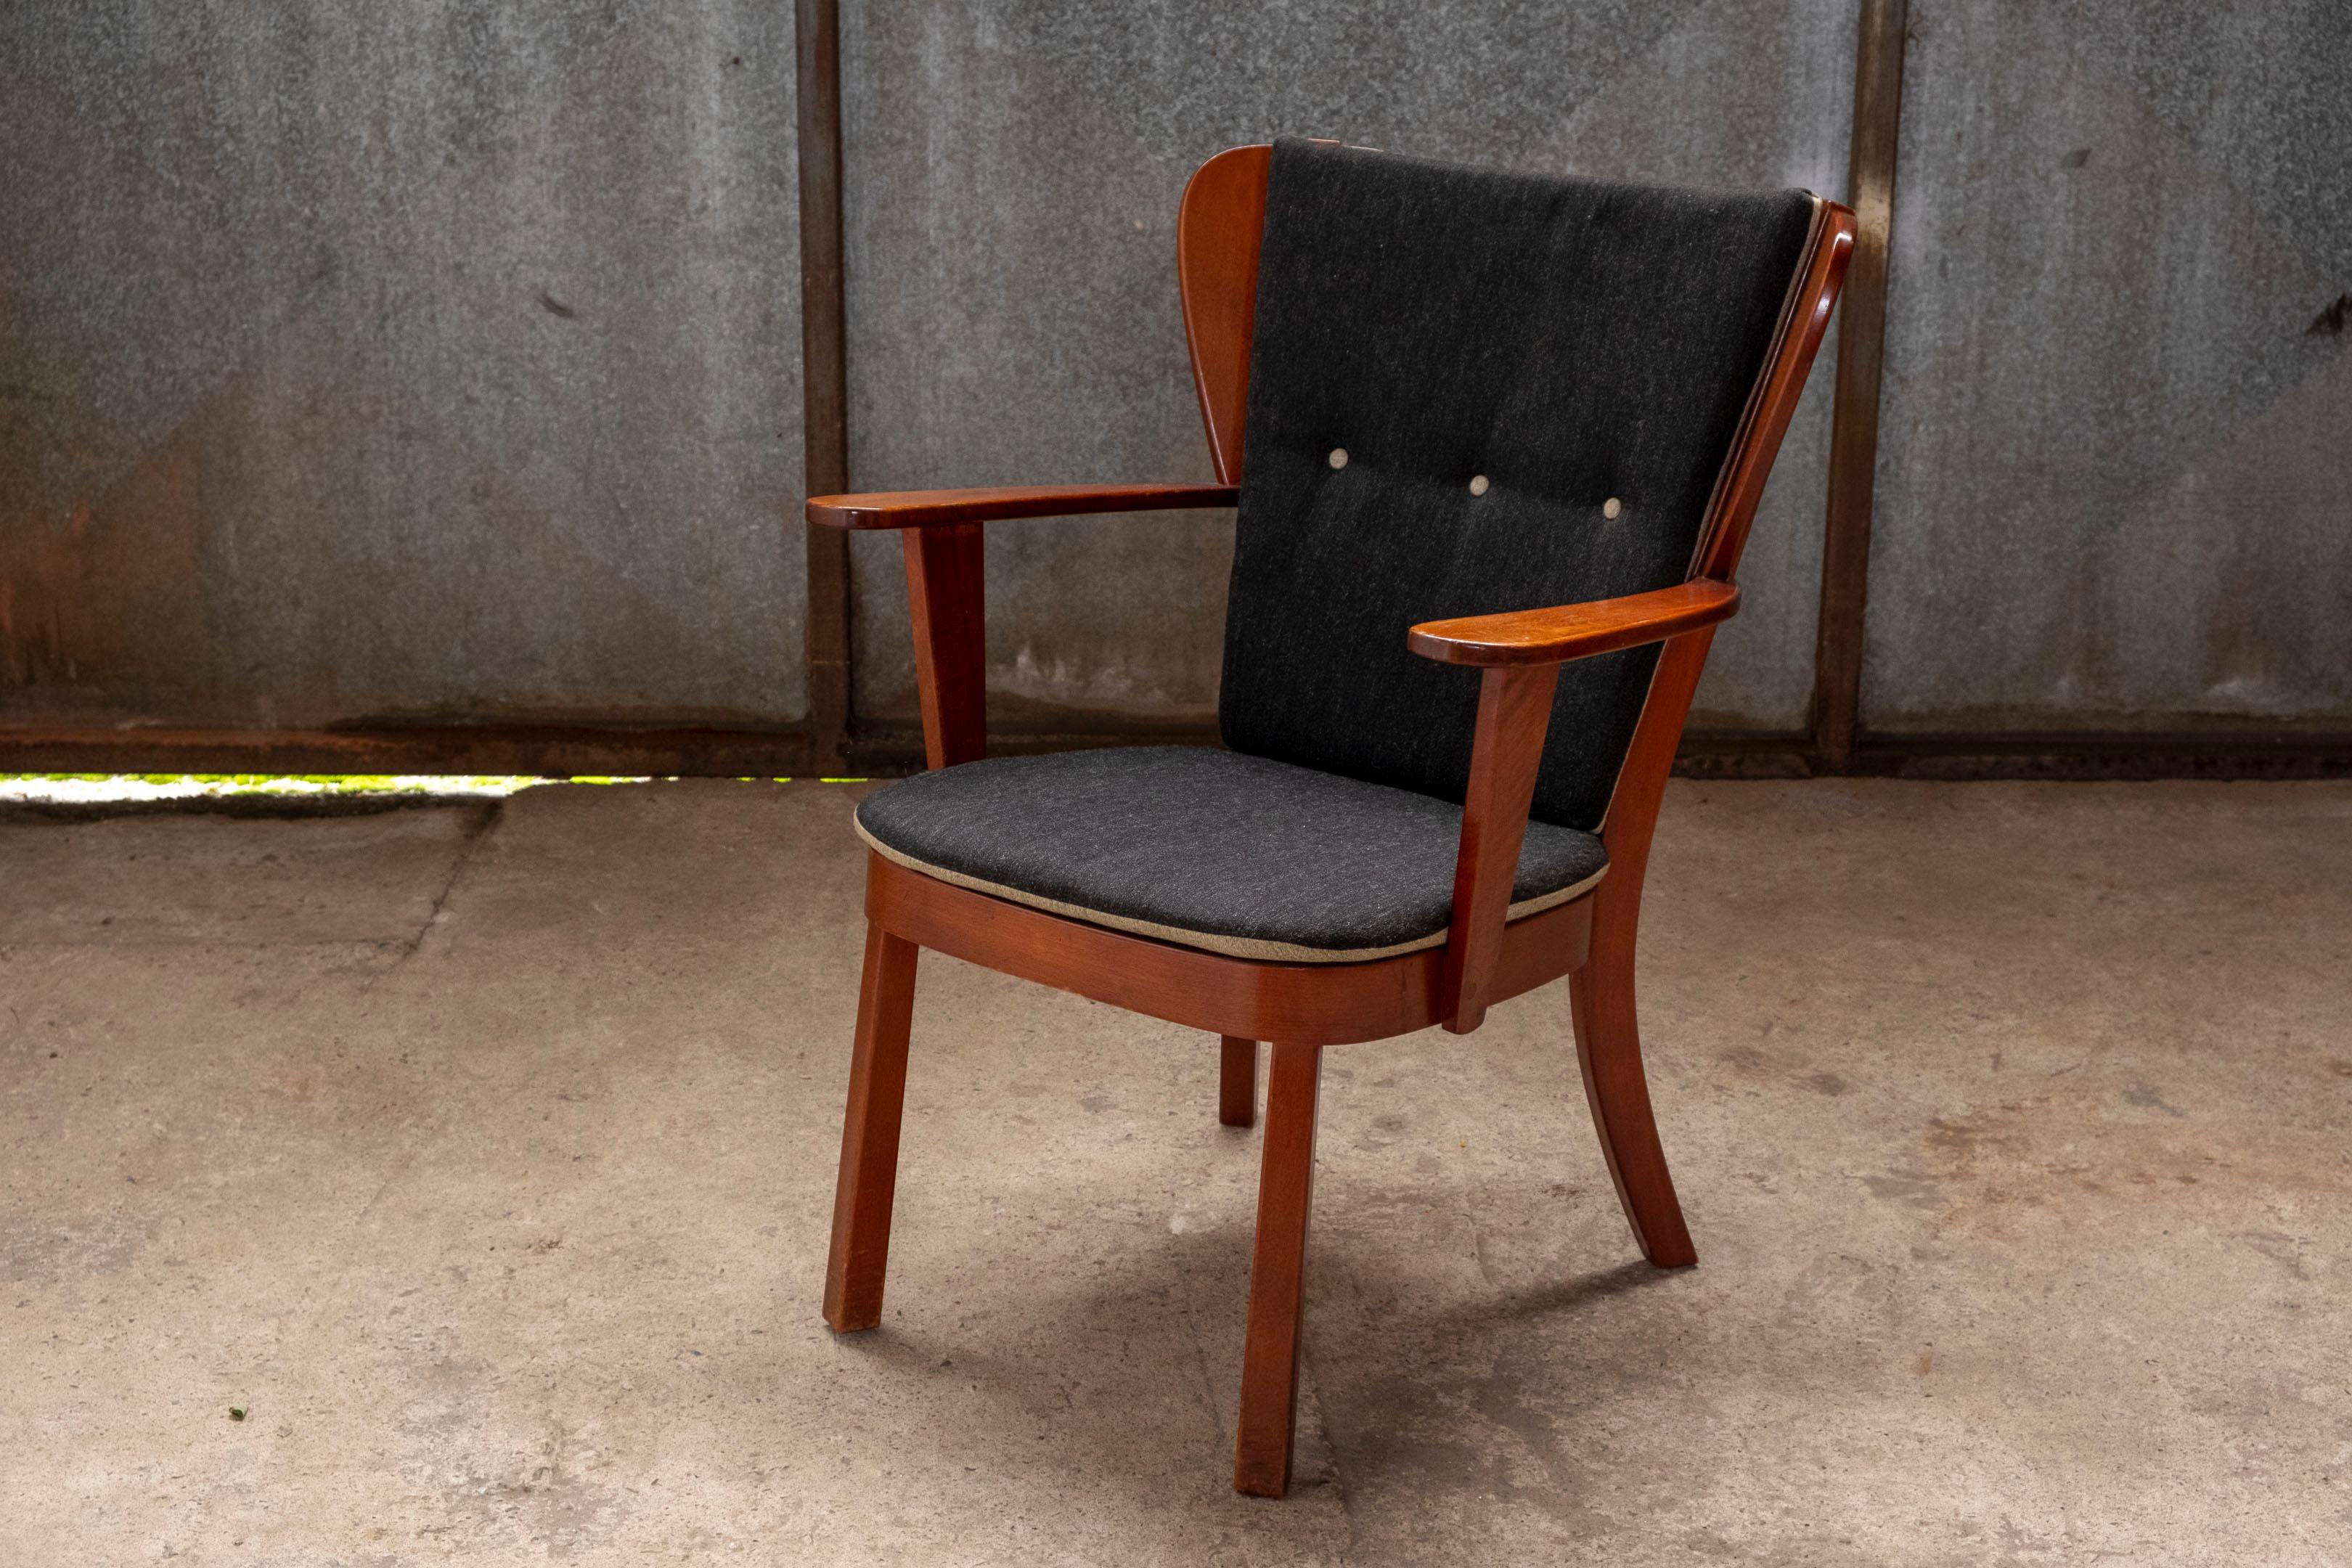 Scandinavian Modern Canada Lounge Chair by Christian E. Hansen, by Fritz Hansen, 1944 Denmark For Sale